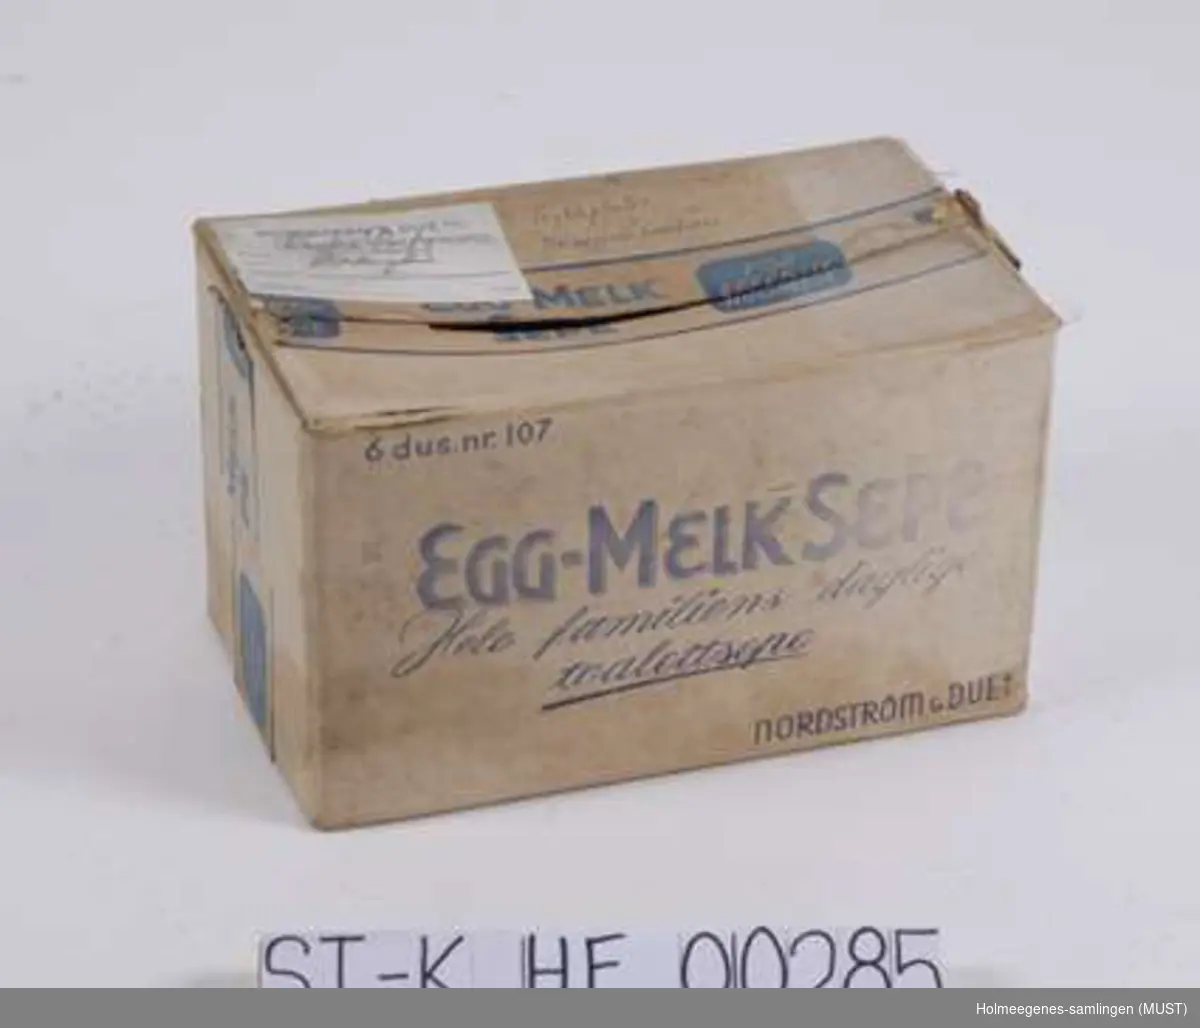 Original emballasje til Egg-melk-sepe fra Nordstrøm & Due A/S.